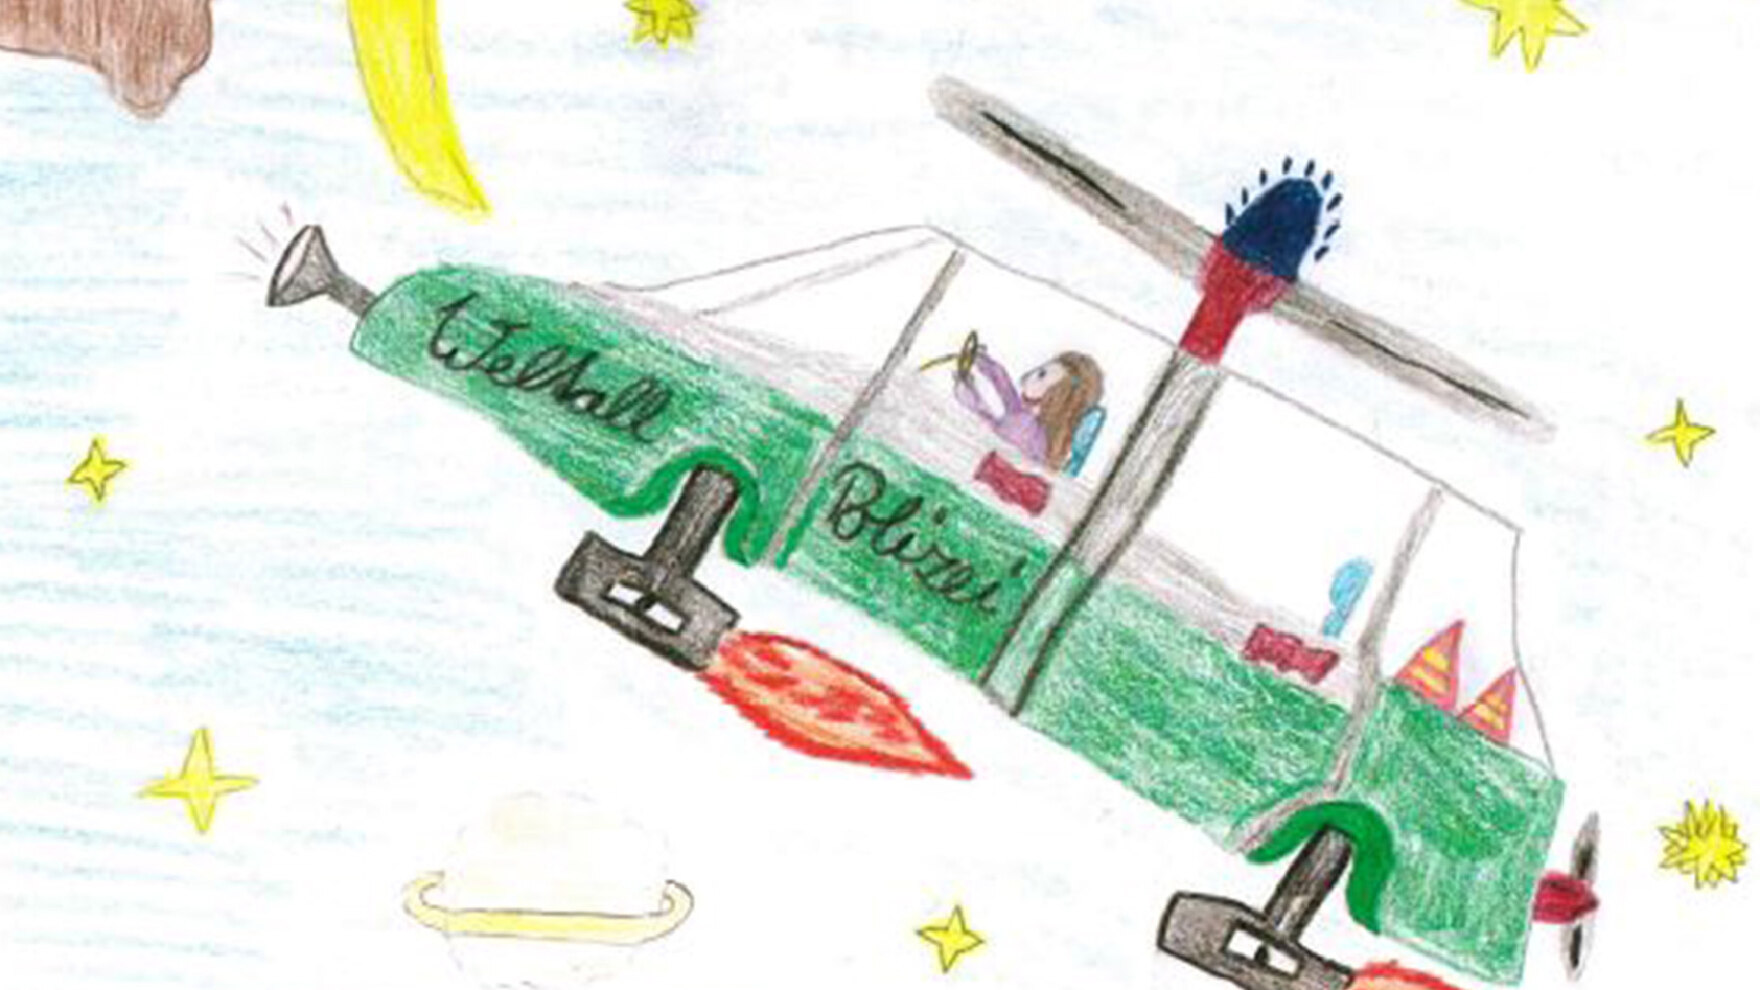 Ein selbstgemaltes Kinderbild zeigt ein grünes Polizeiauto mit Düsen statt Rädern und einem Propeller im Weltall. Beschriftet ist das Fahrzeug mit »Weltallpolizei«. Auf dem Dach ist Blaulicht, am Steuer eine Person. Im Hintergrund sind Sterne und Mond.